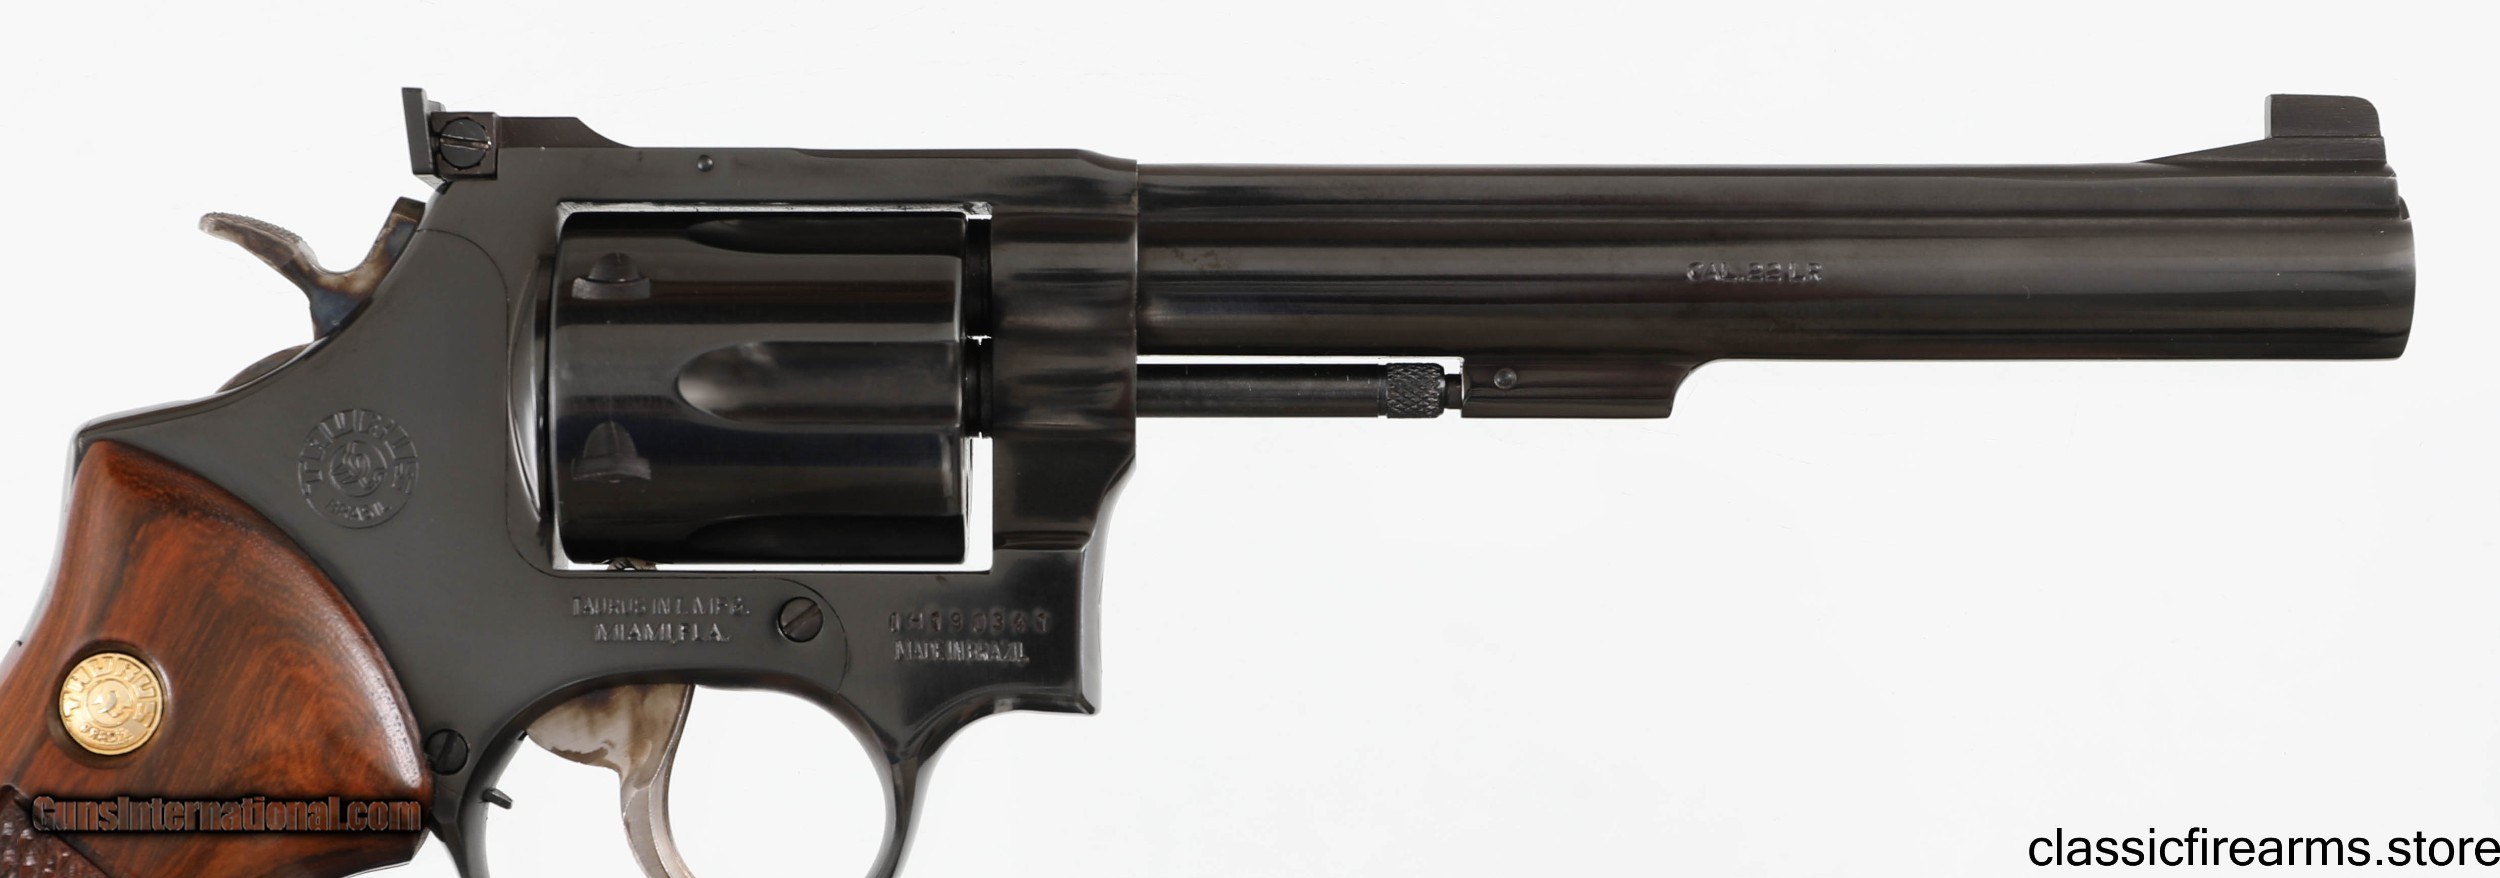 Taurus Model 96 22lr Revolver Lnib